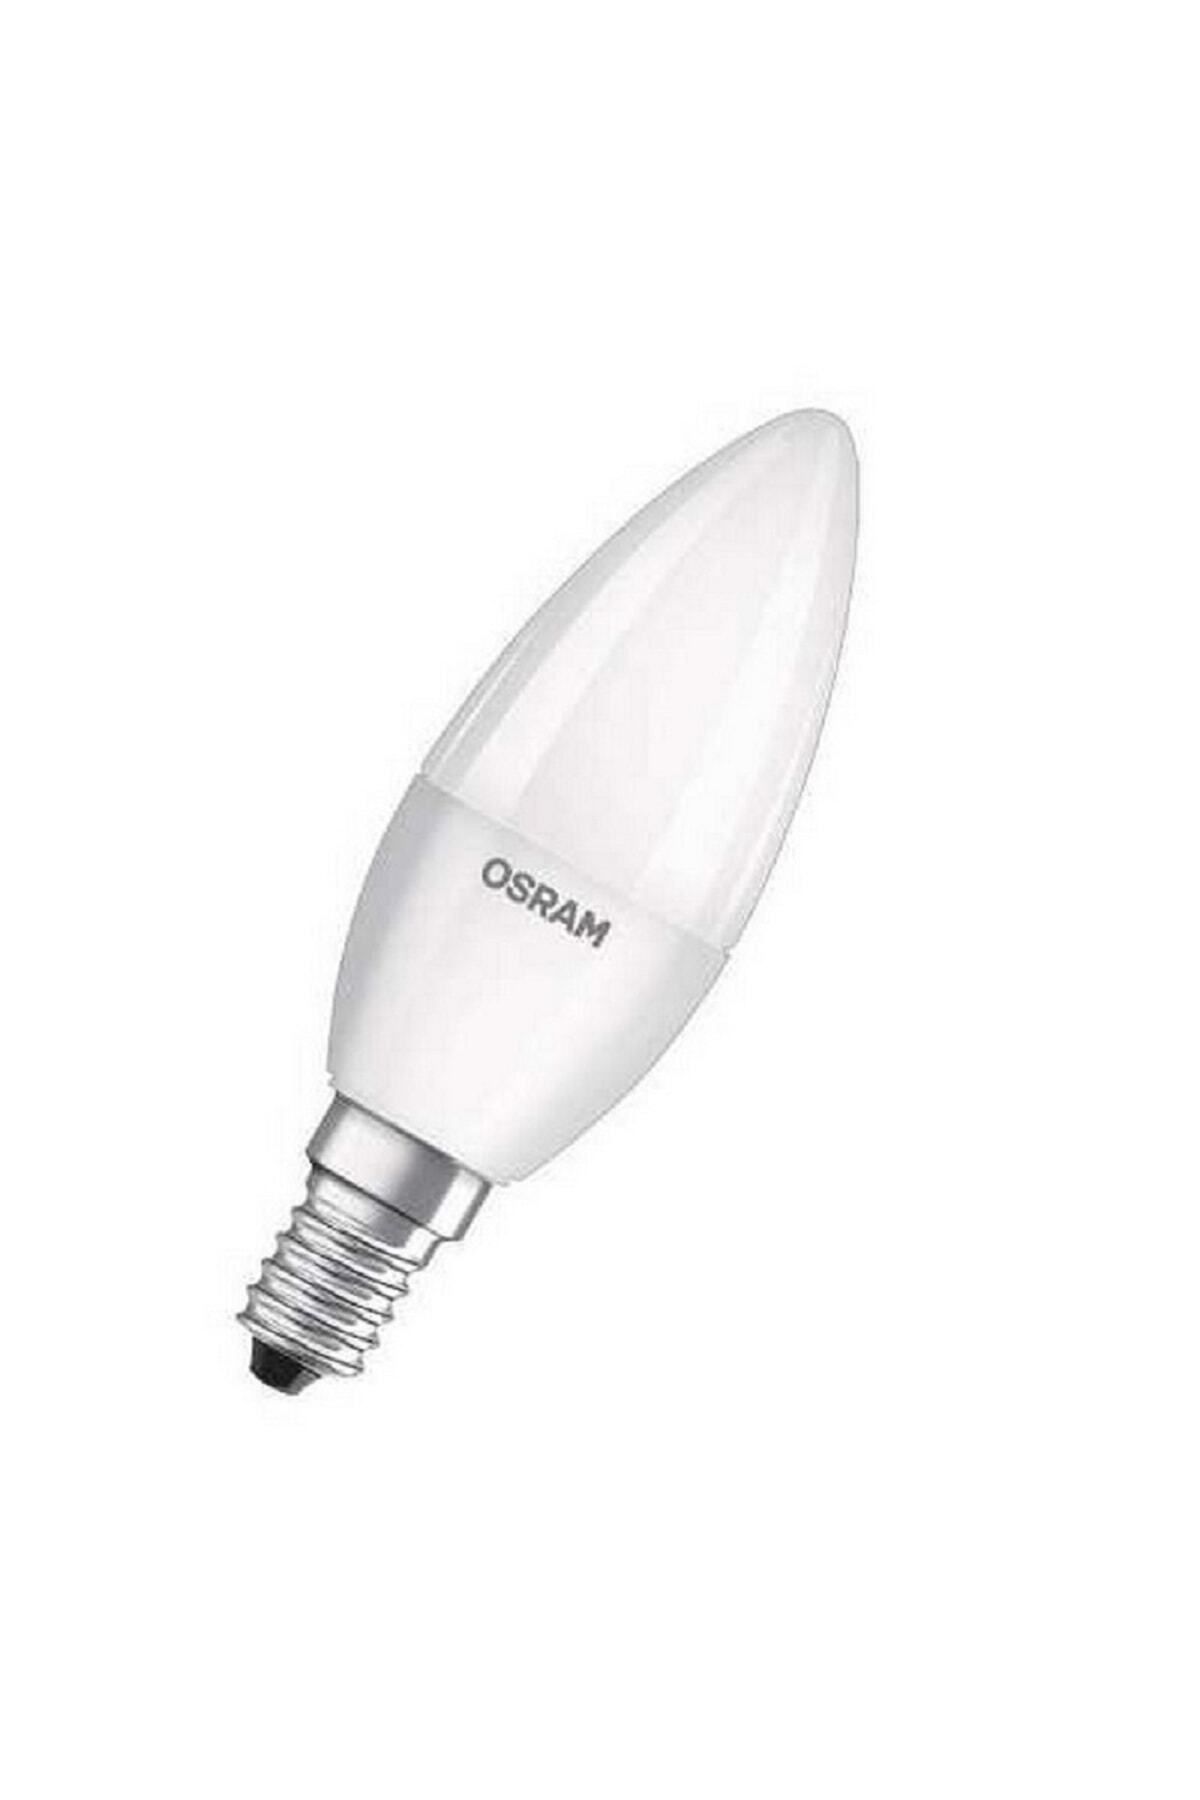 Osram Led Value 7w Beyaz Işık E-14 806lm Ampul 6 Lı Paket